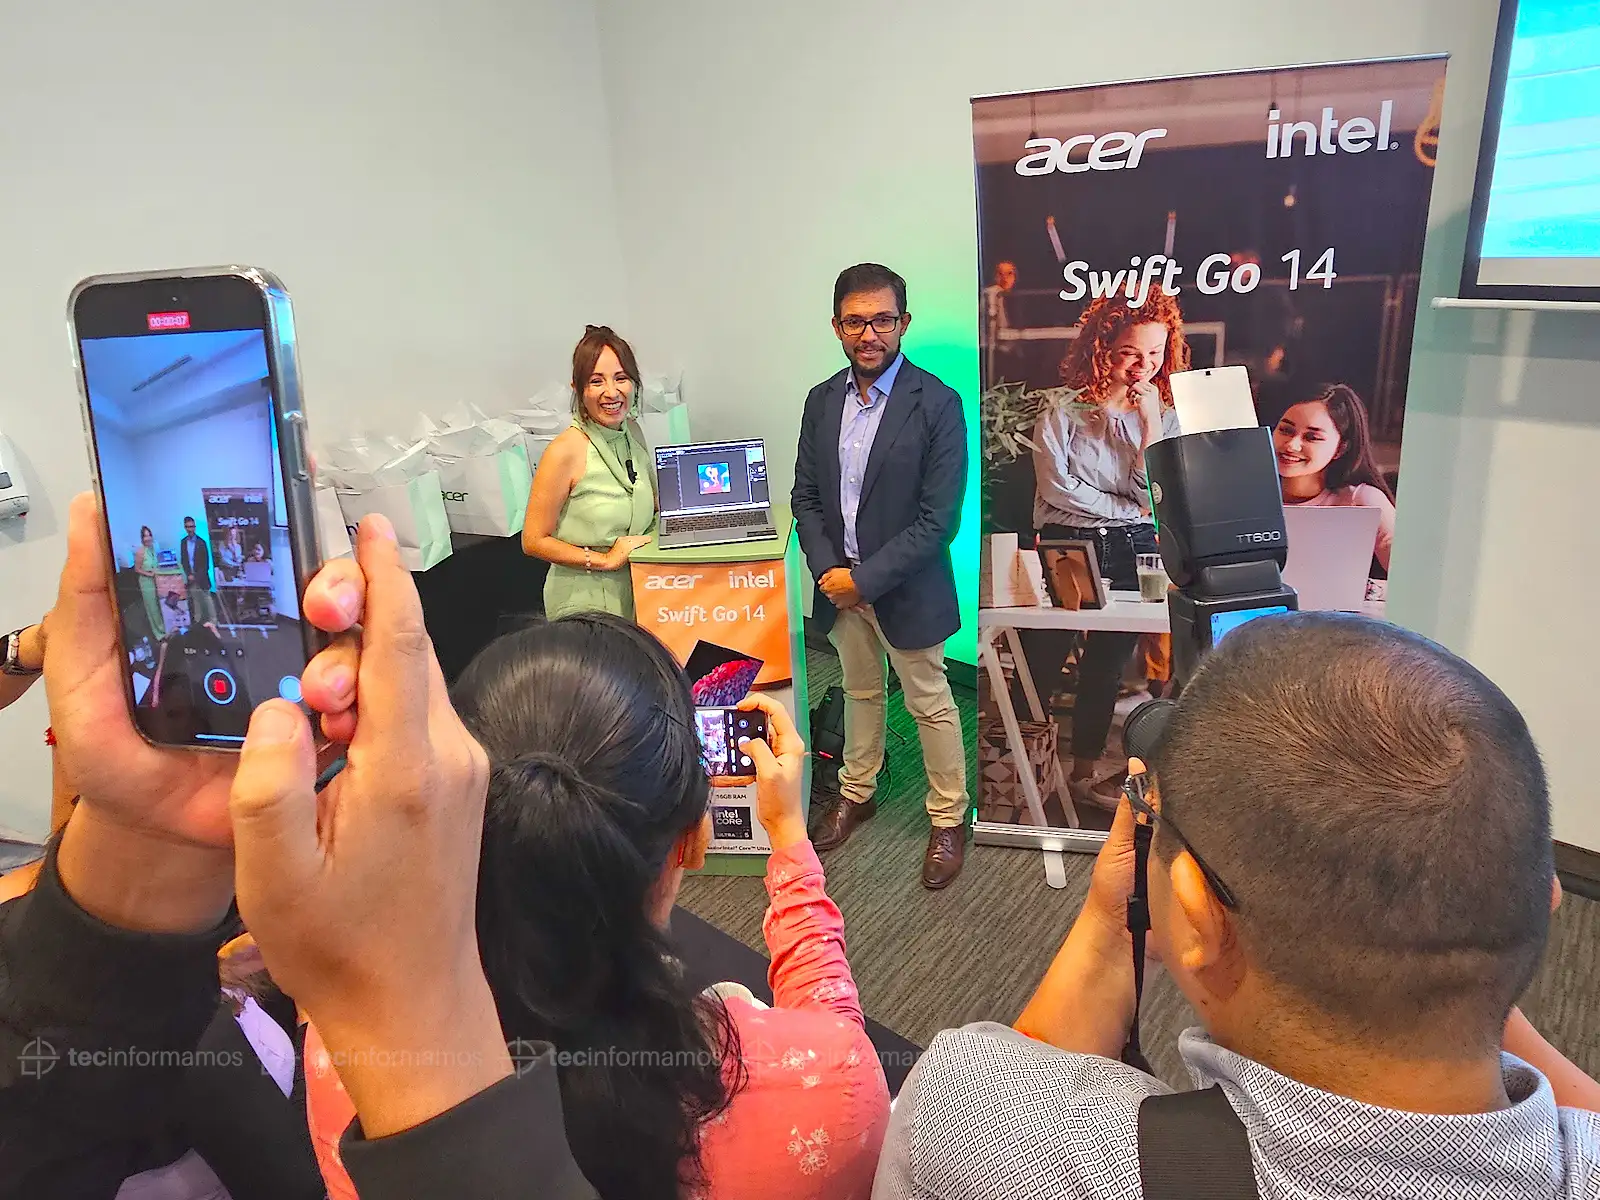 Lanzamiento de la Acer Swift Go en Perú